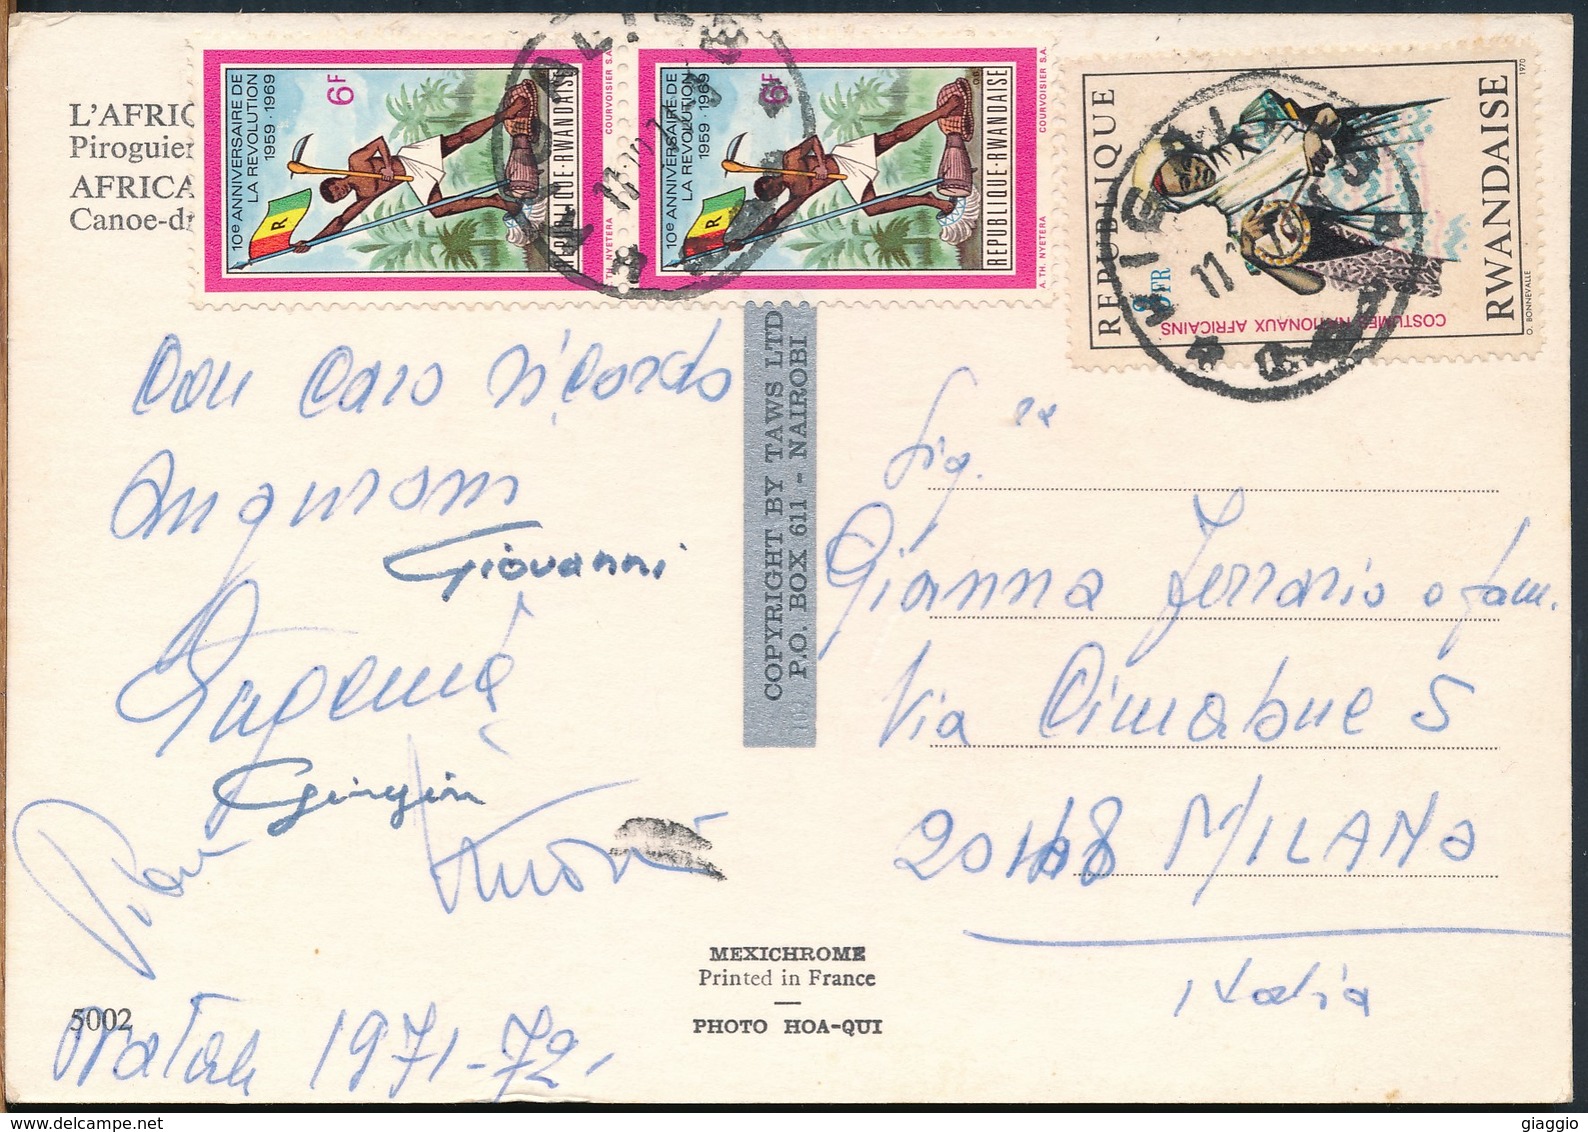 °°° 19003 - RWANDA - CANOE - 1971 With Stamps °°° - Ruanda